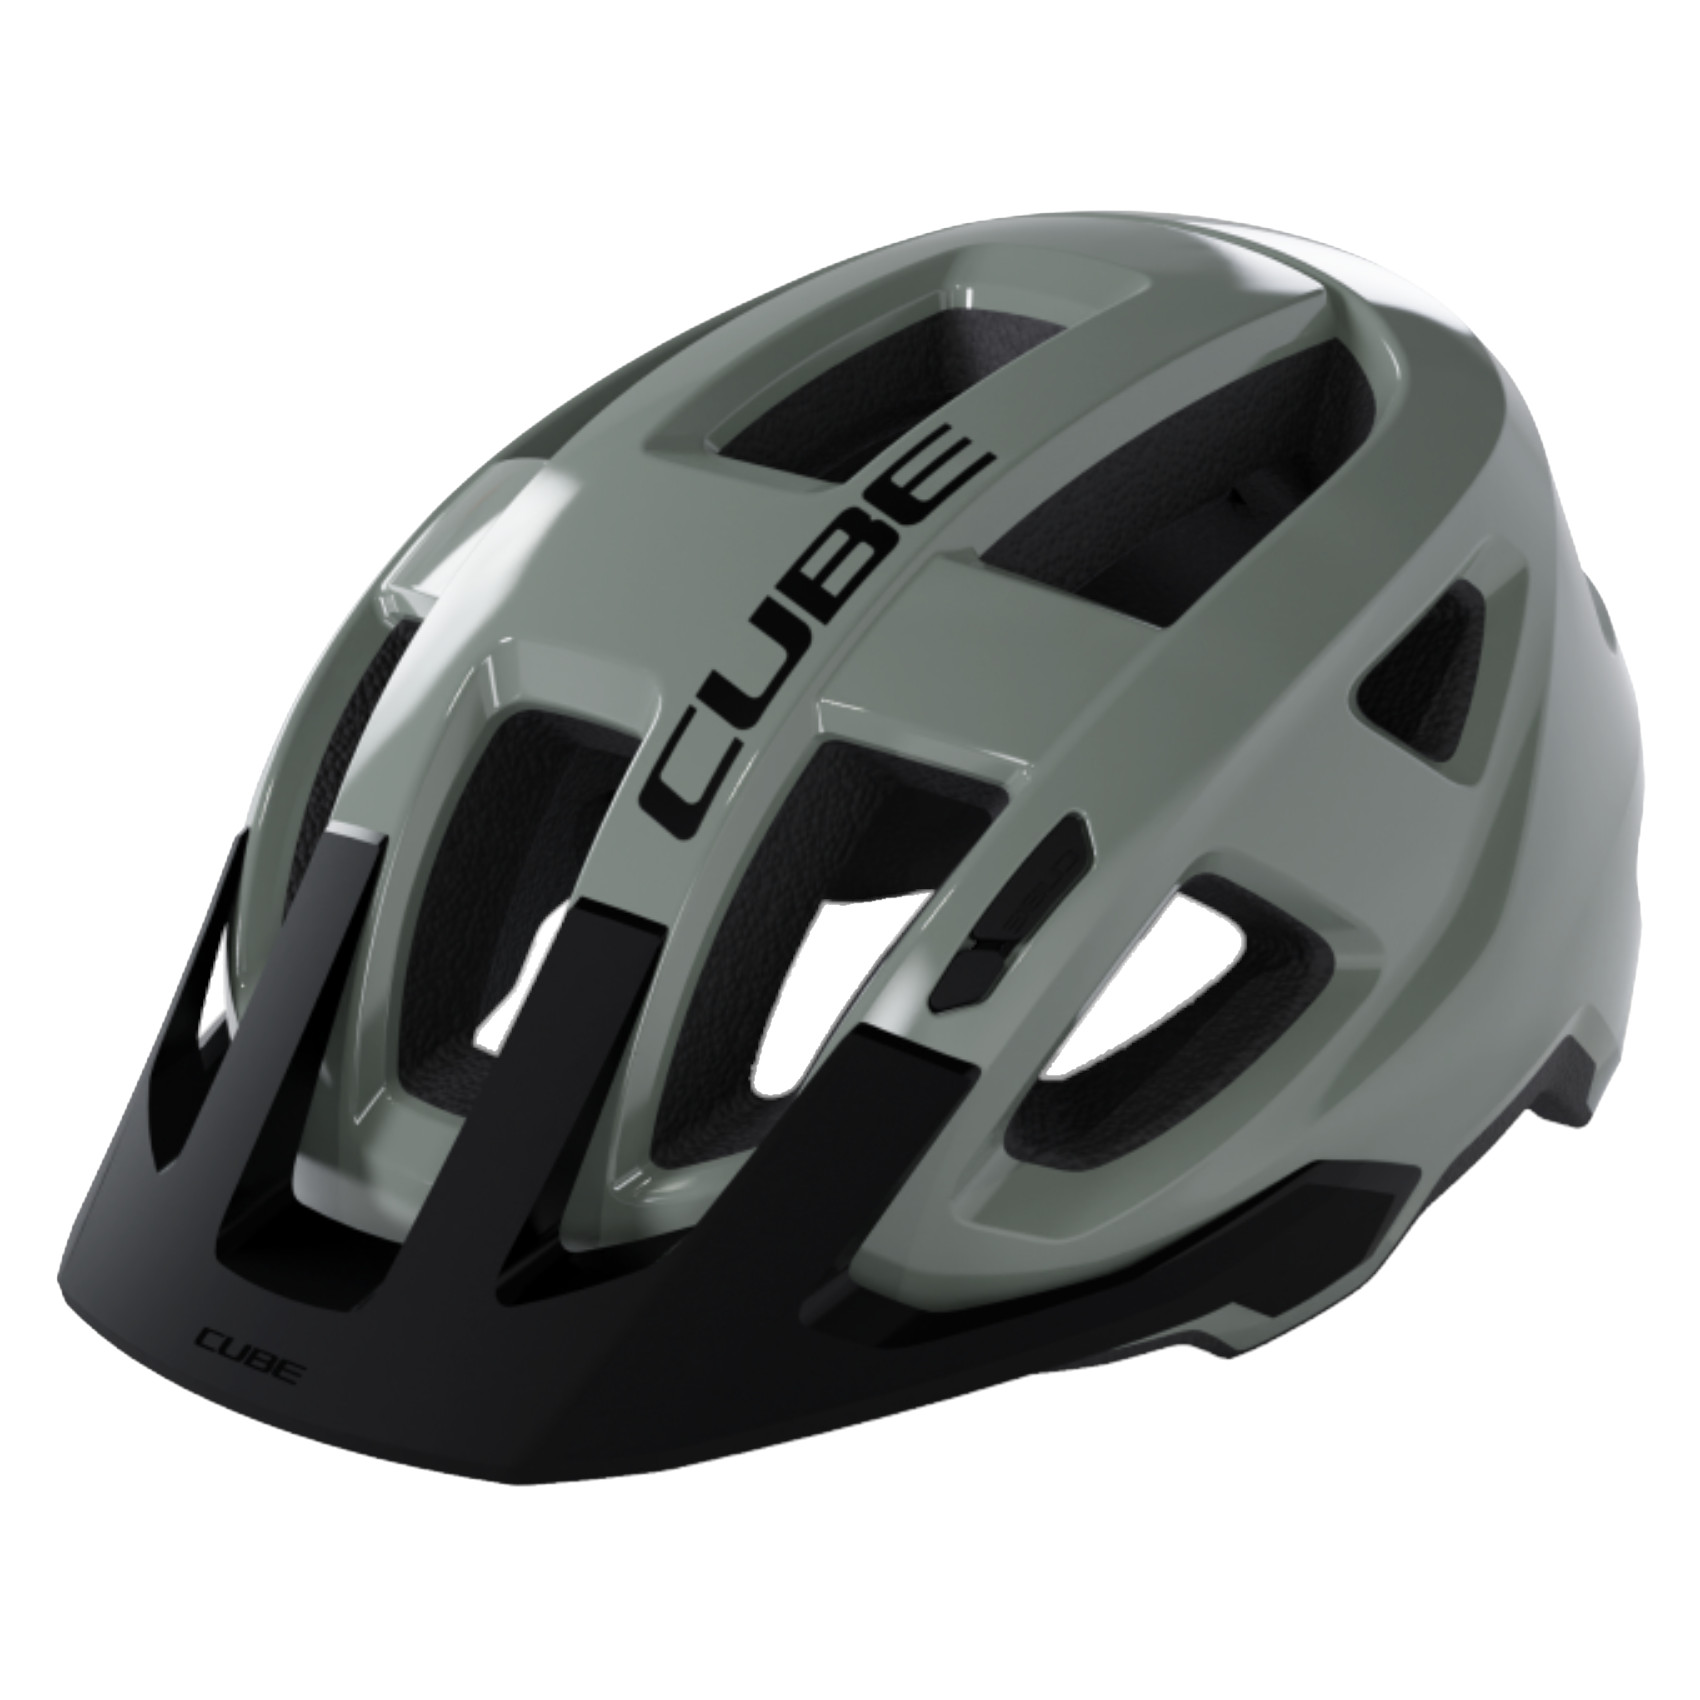 Produktbild von CUBE FLEET Helm - grau